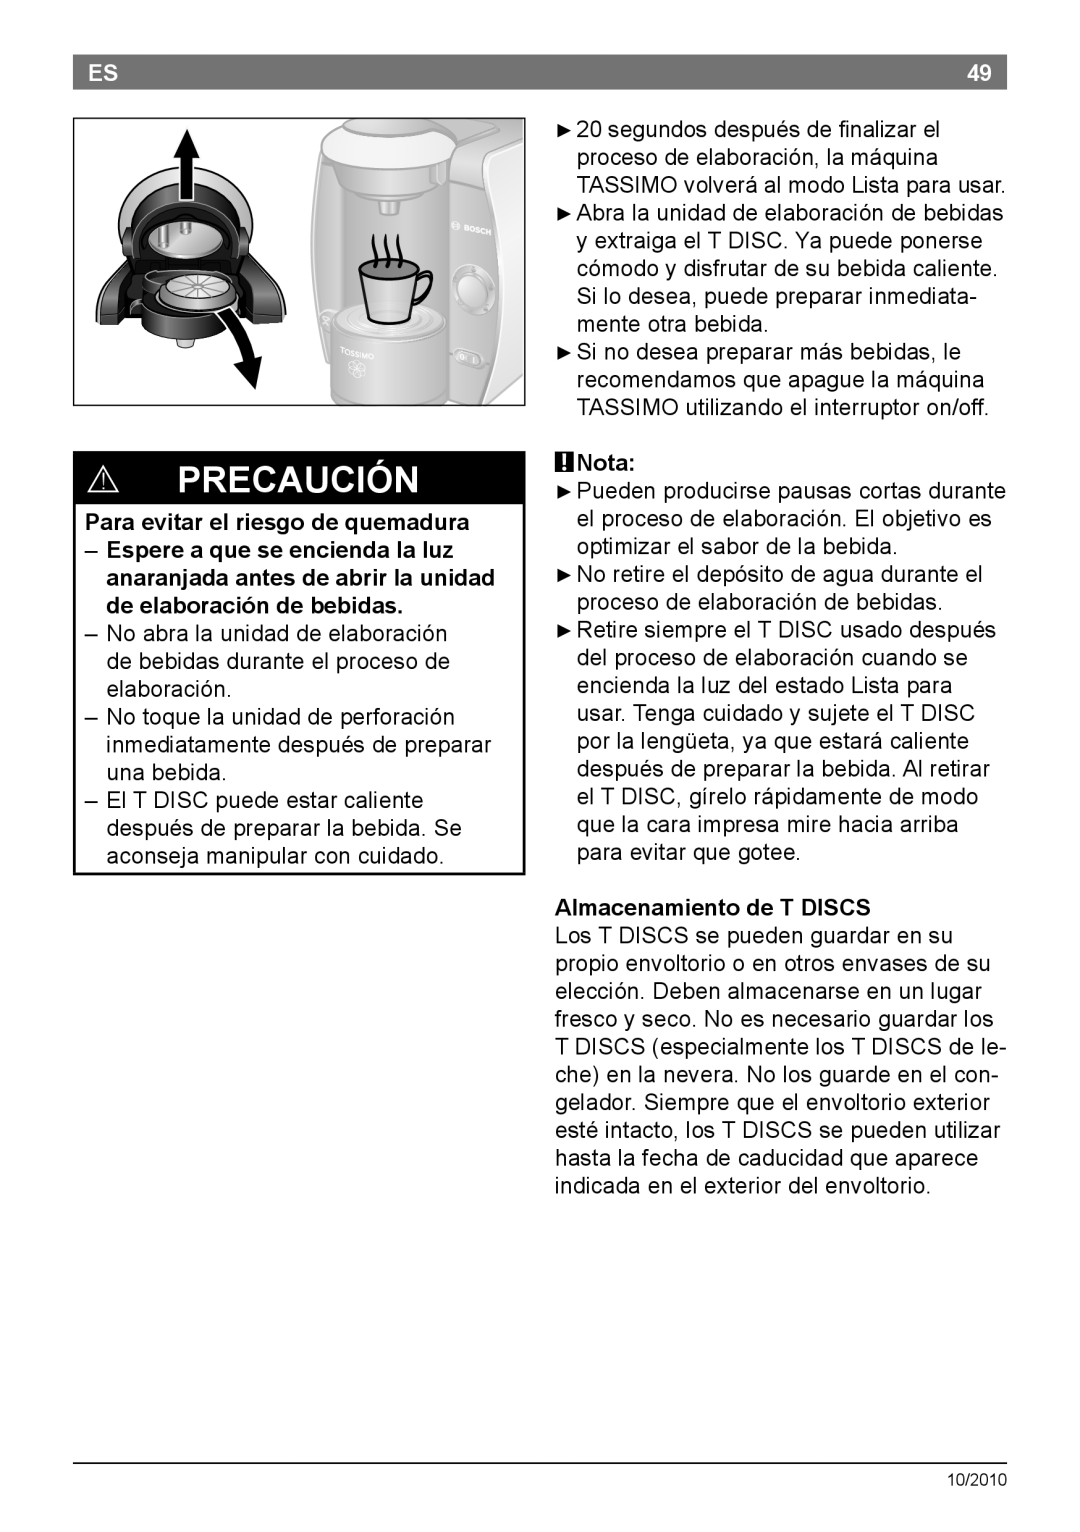 Bosch Appliances T45 instruction manual Para evitar el riesgo de quemadura, Nota, Almacenamiento de T DISCS, Precaución 